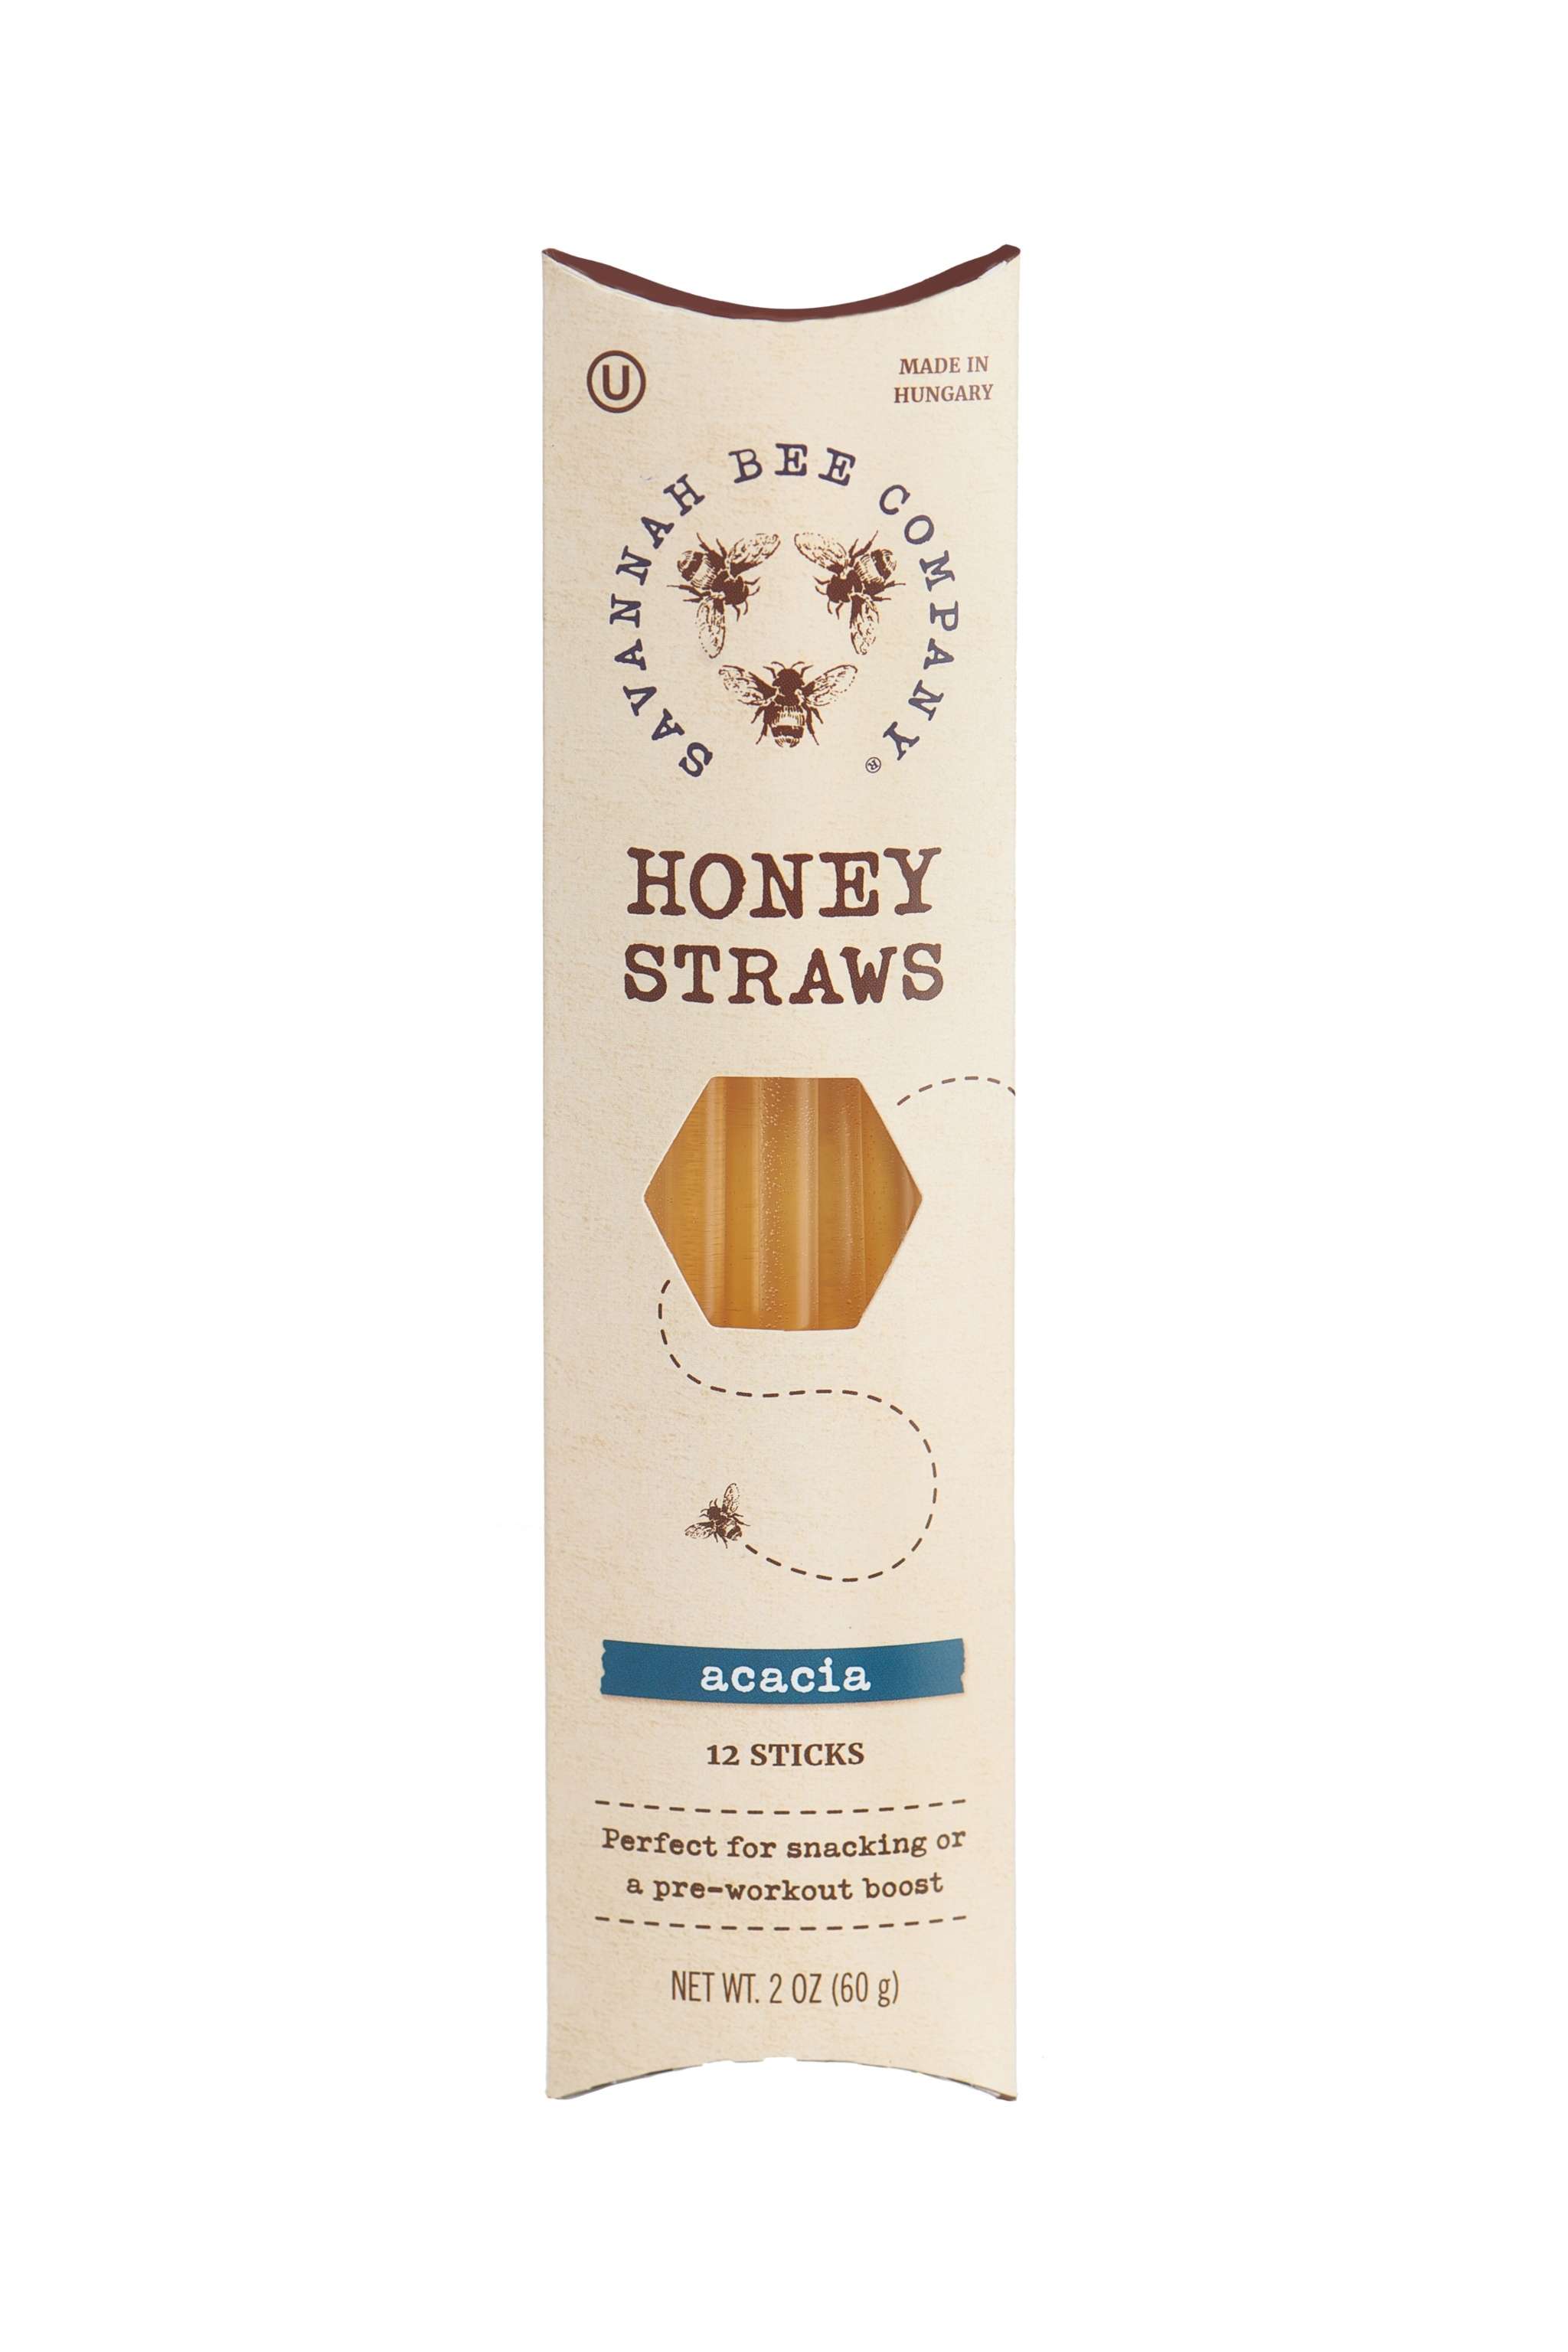 Savannah Bee Company Honey Straws 50 Pack